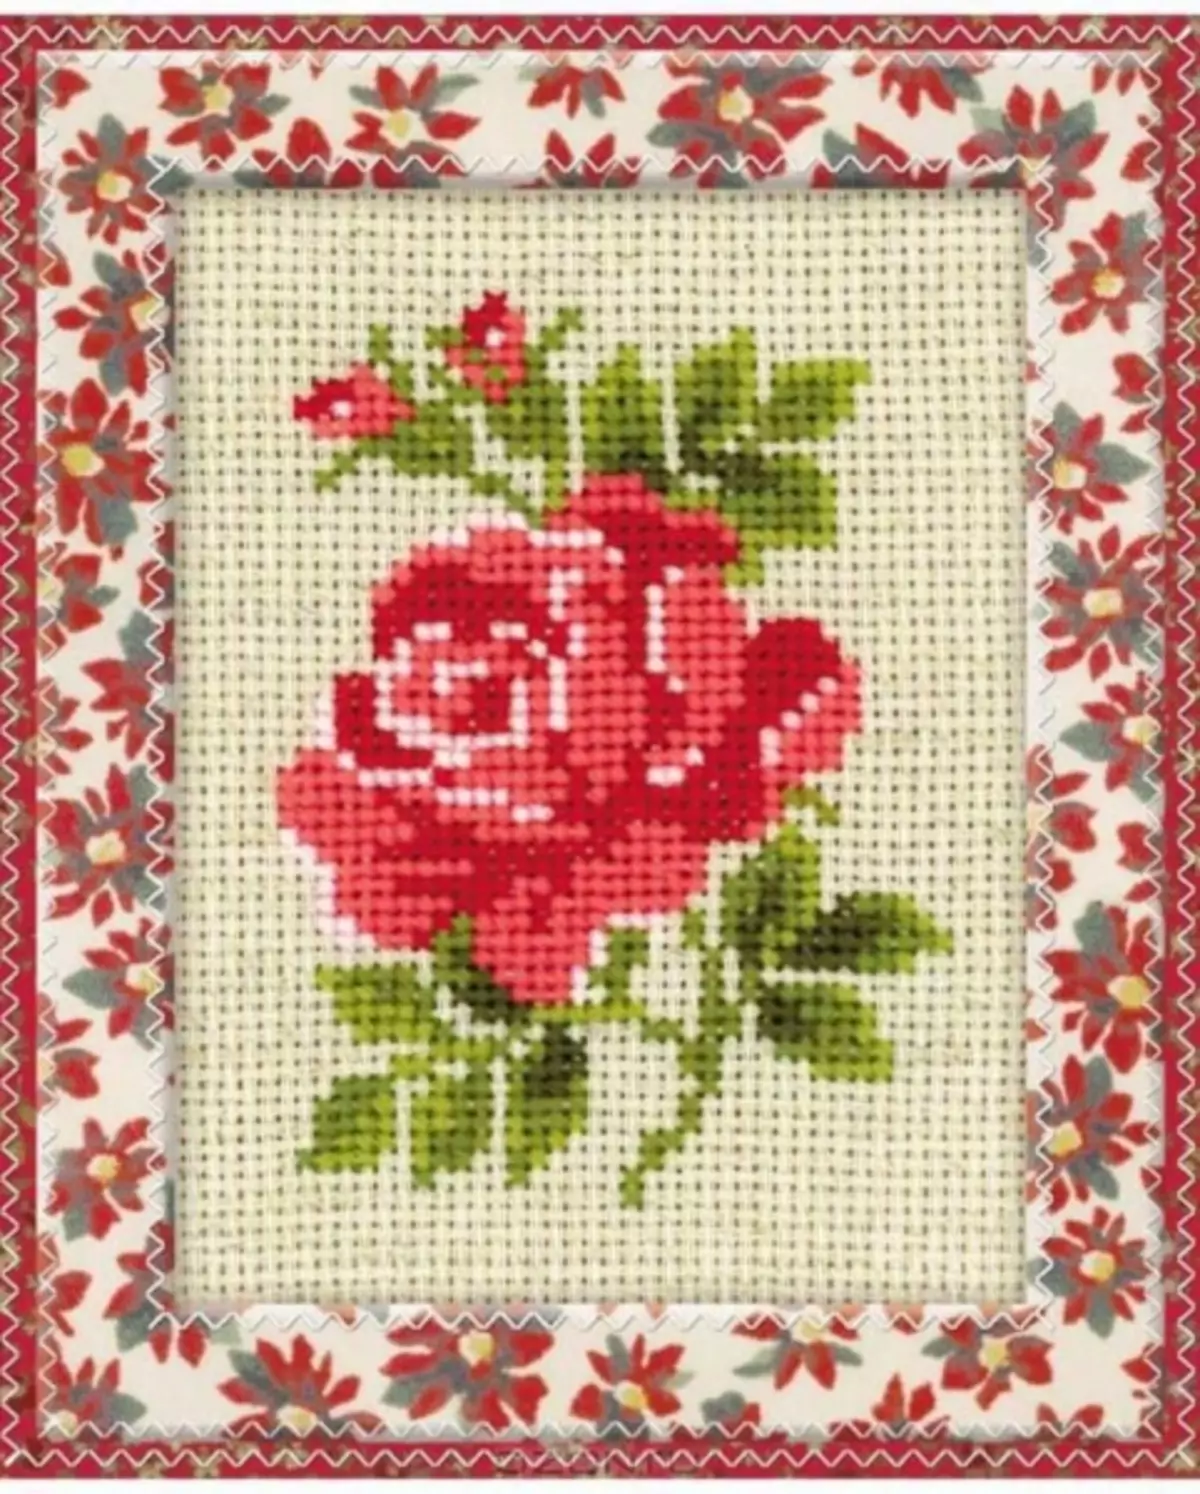 Rožių kryžminis siuvinėjimas: rinkiniai krepšelyje, balta puokštė vazoje, mergina pradedantiesiems, triptys ir drugeliai